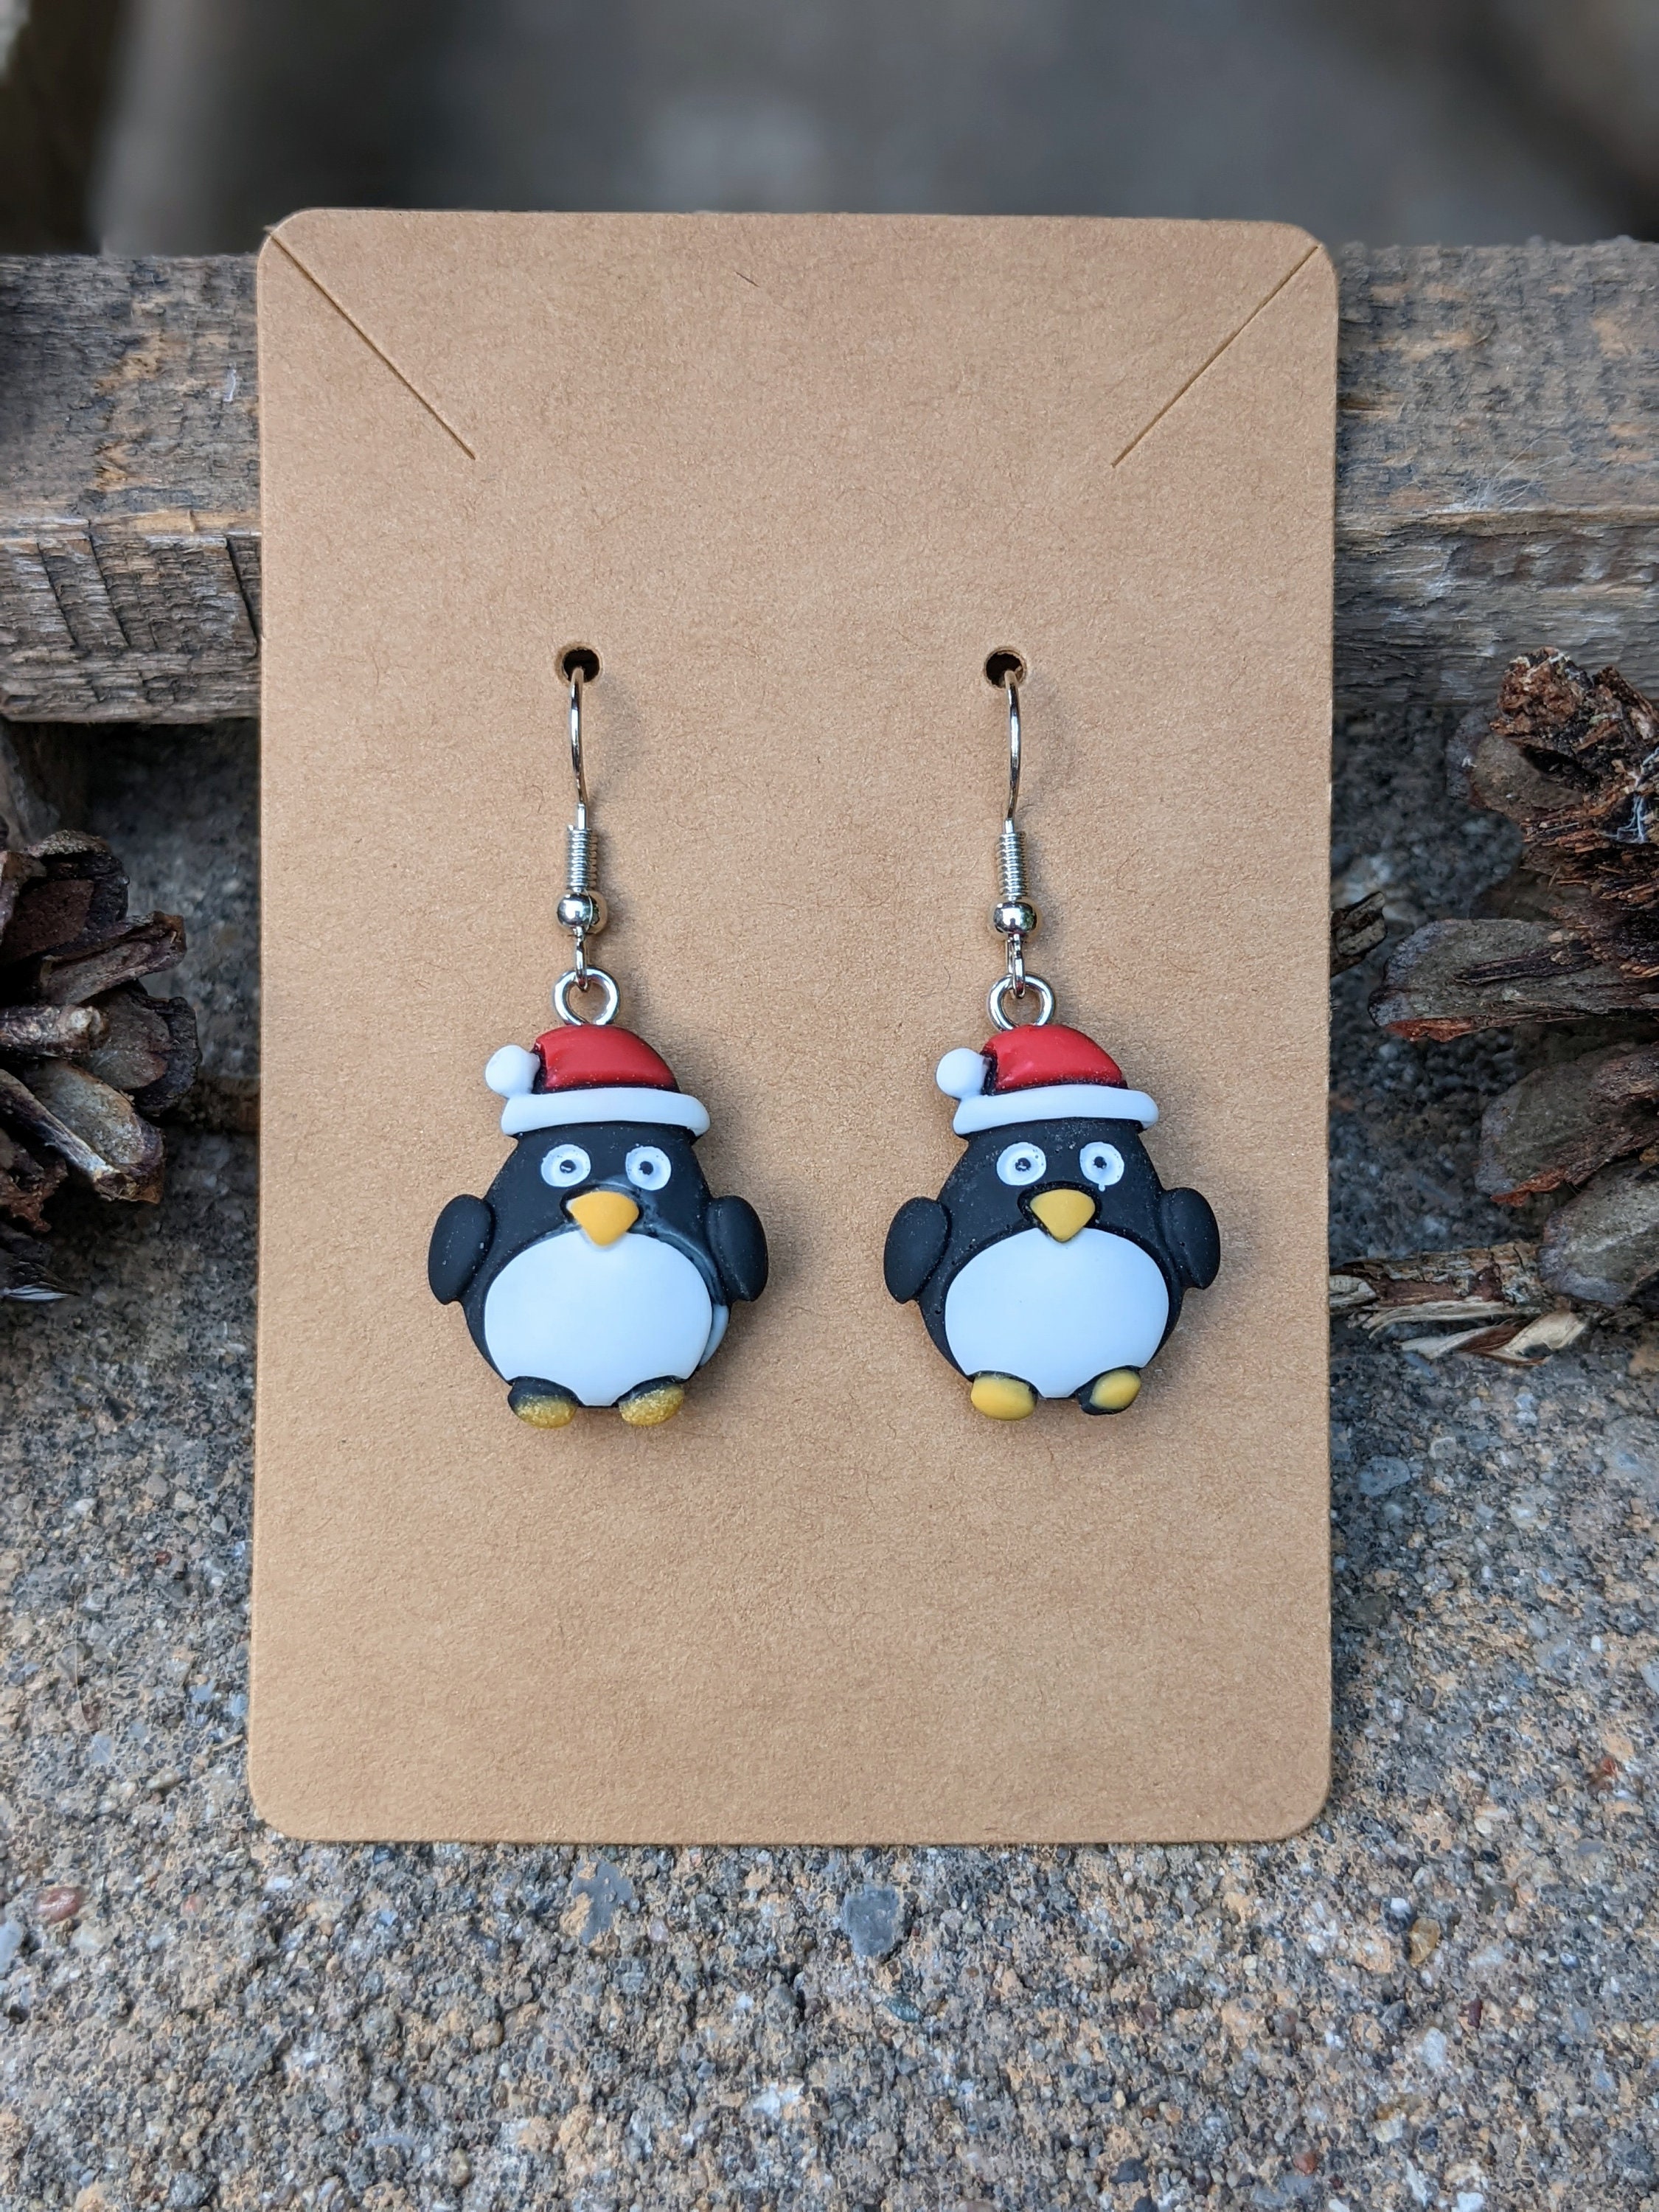 CUTE! Penguin Earring Tutorial in DIY Matchbook Gift Packaging